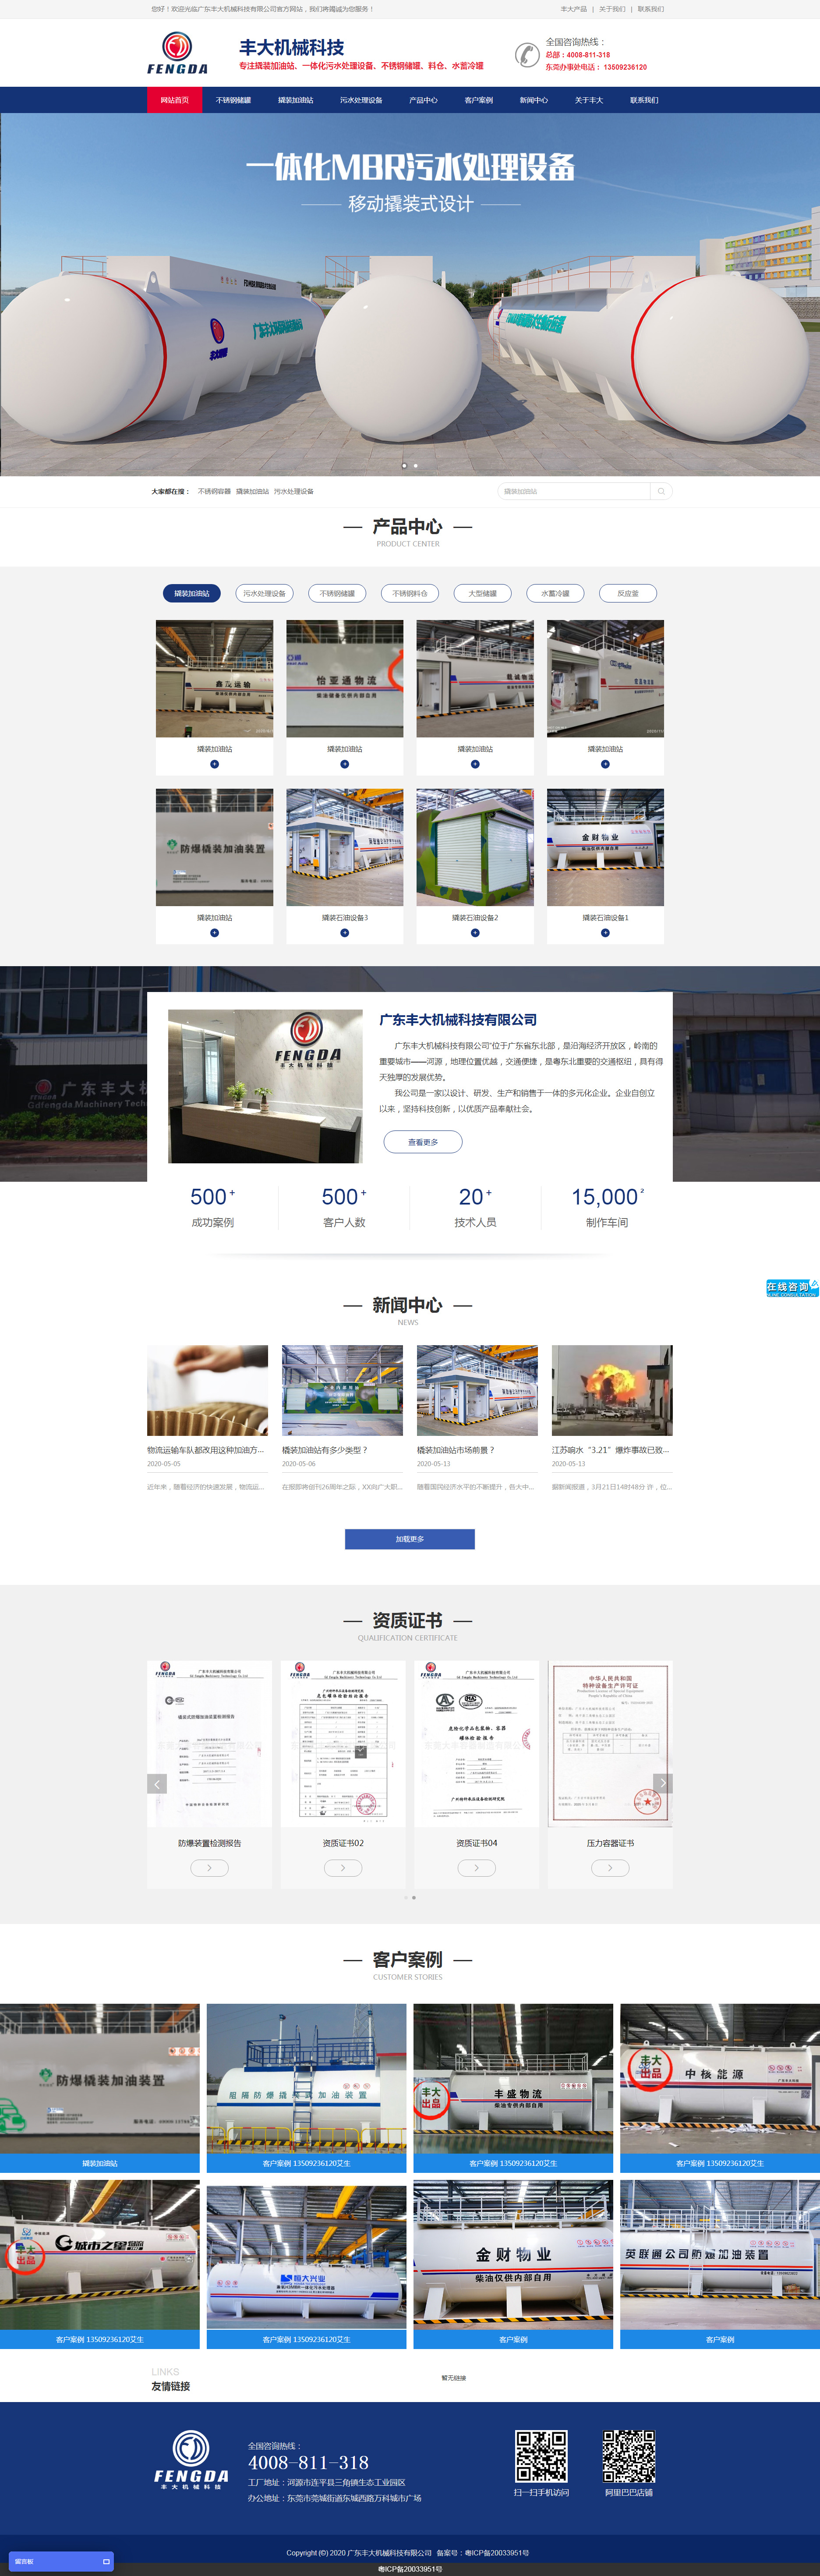 广东丰大机械科技网站设计效果图